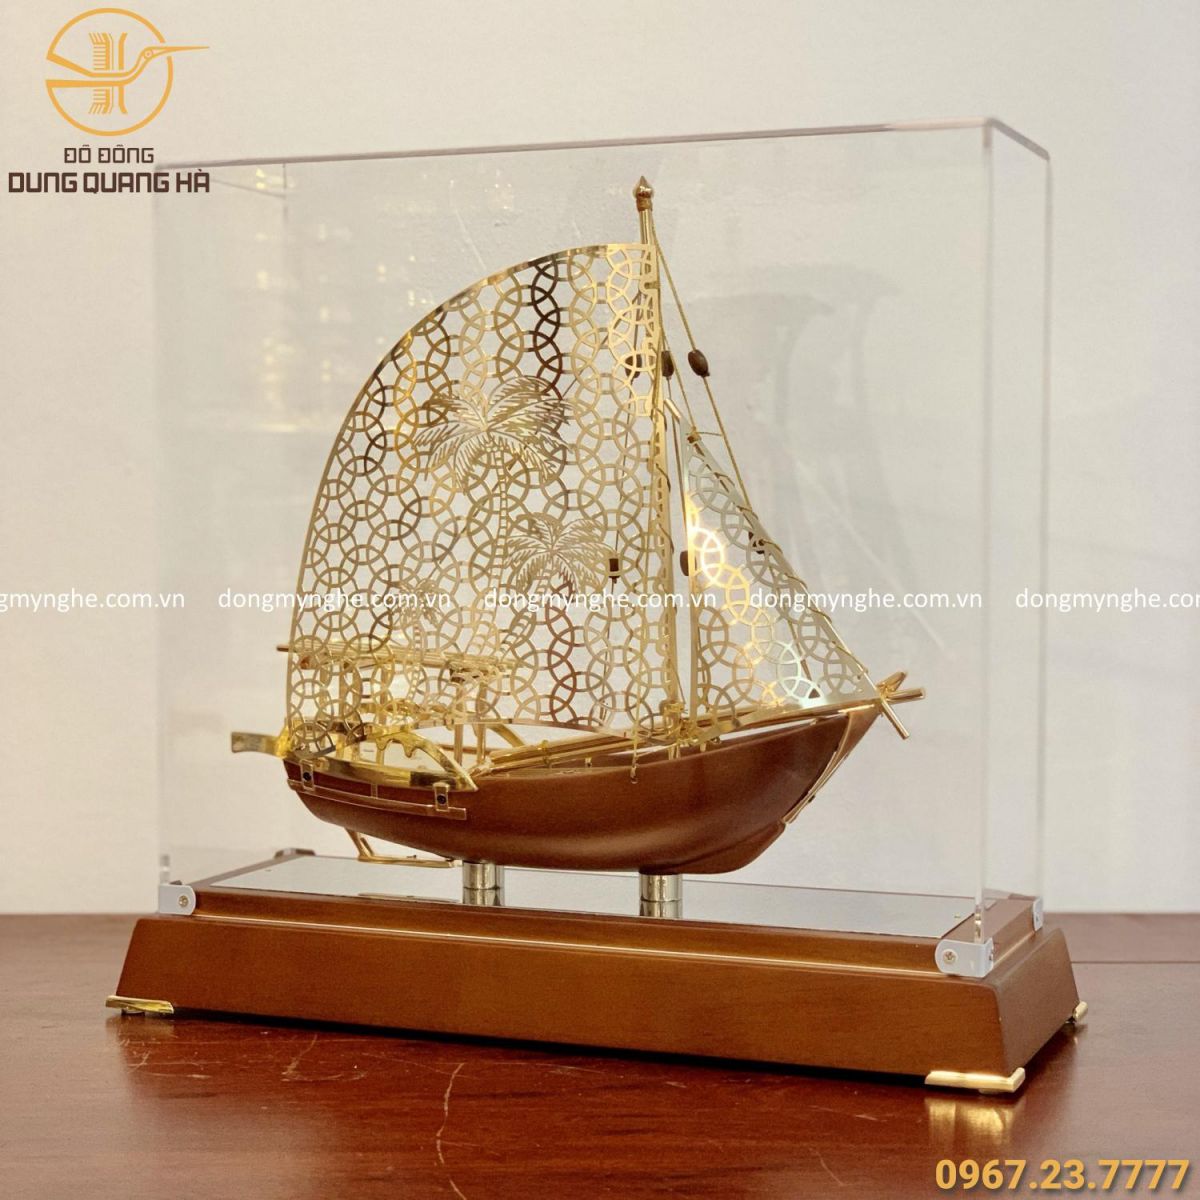 Mô hình thuyền buồm gỗ cỡ nhỏ  đồ decor phong thủy để bàn làm việc giám  đốc  Nội thất tân cổ điển Đồ gỗ mỹ nghệ